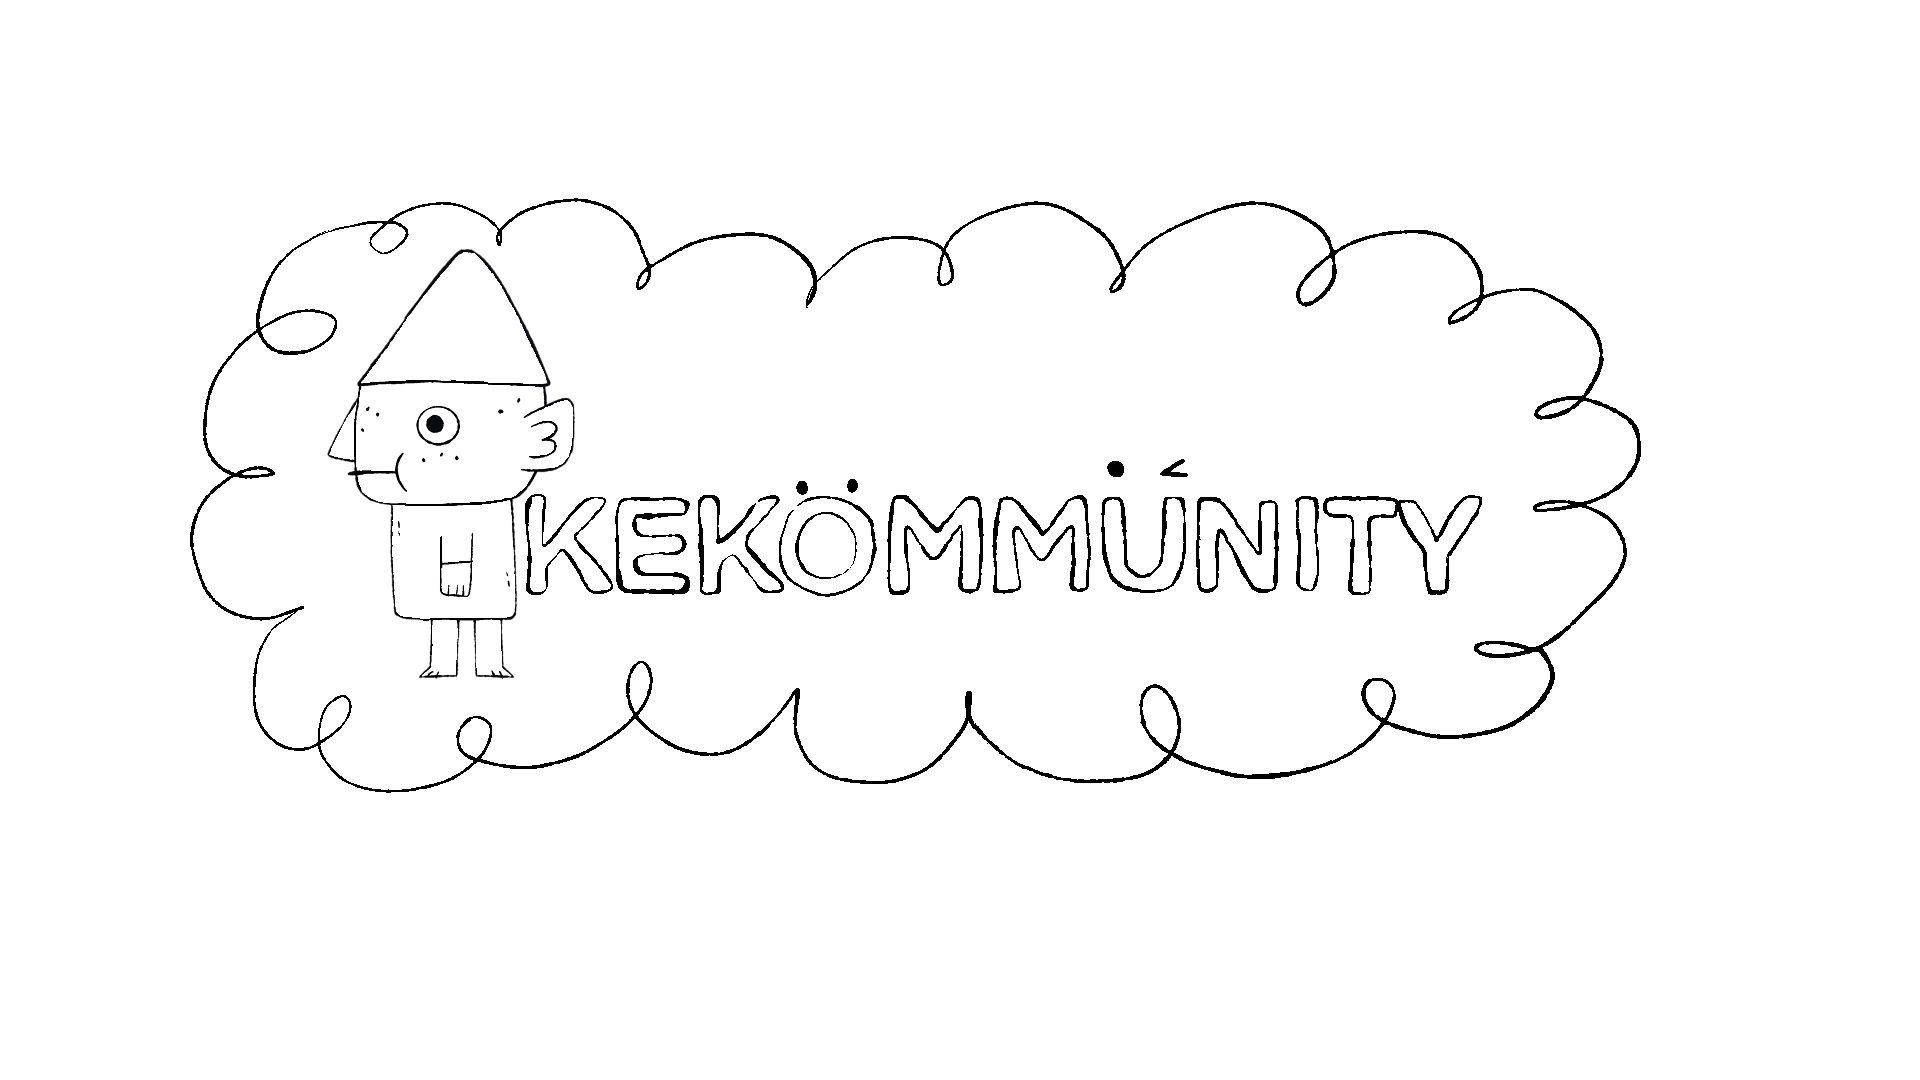 Kekommunity